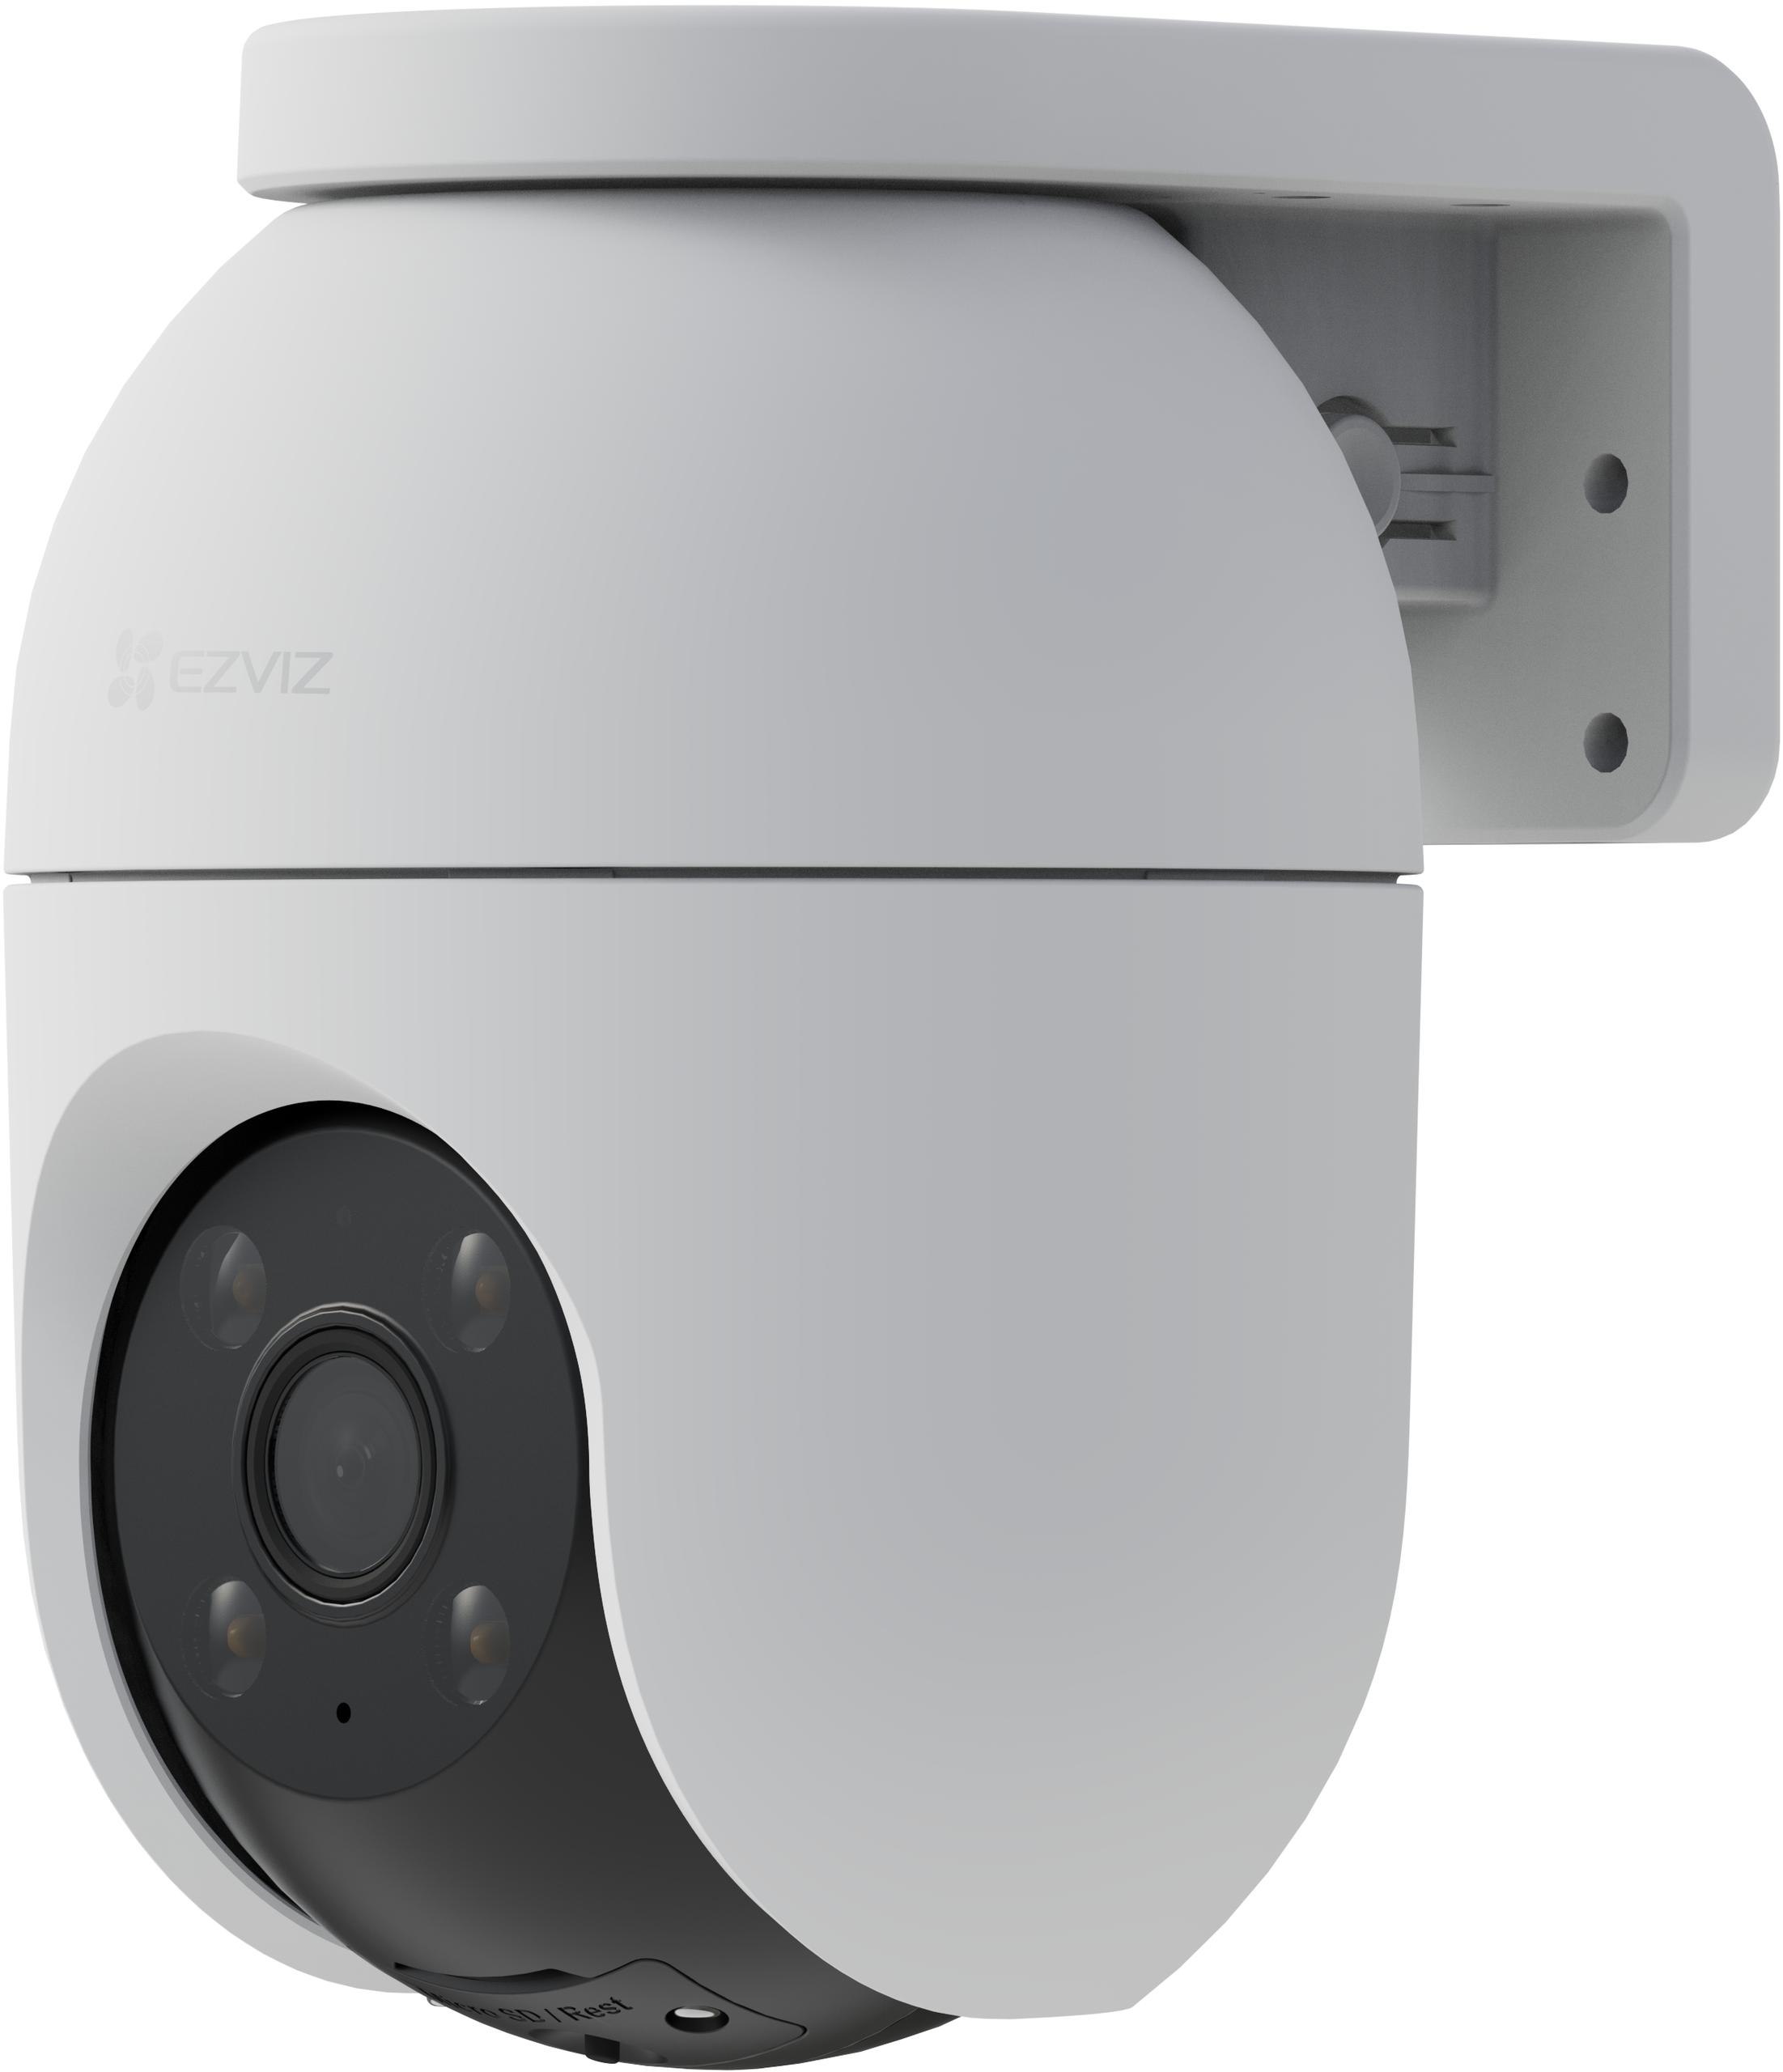 Obrotowa kamera monitorująca Wi-Fi EZVIZ CS-C8c 2K+ 4MPx 360° - specyfikacja i dane techniczne urządzenia: